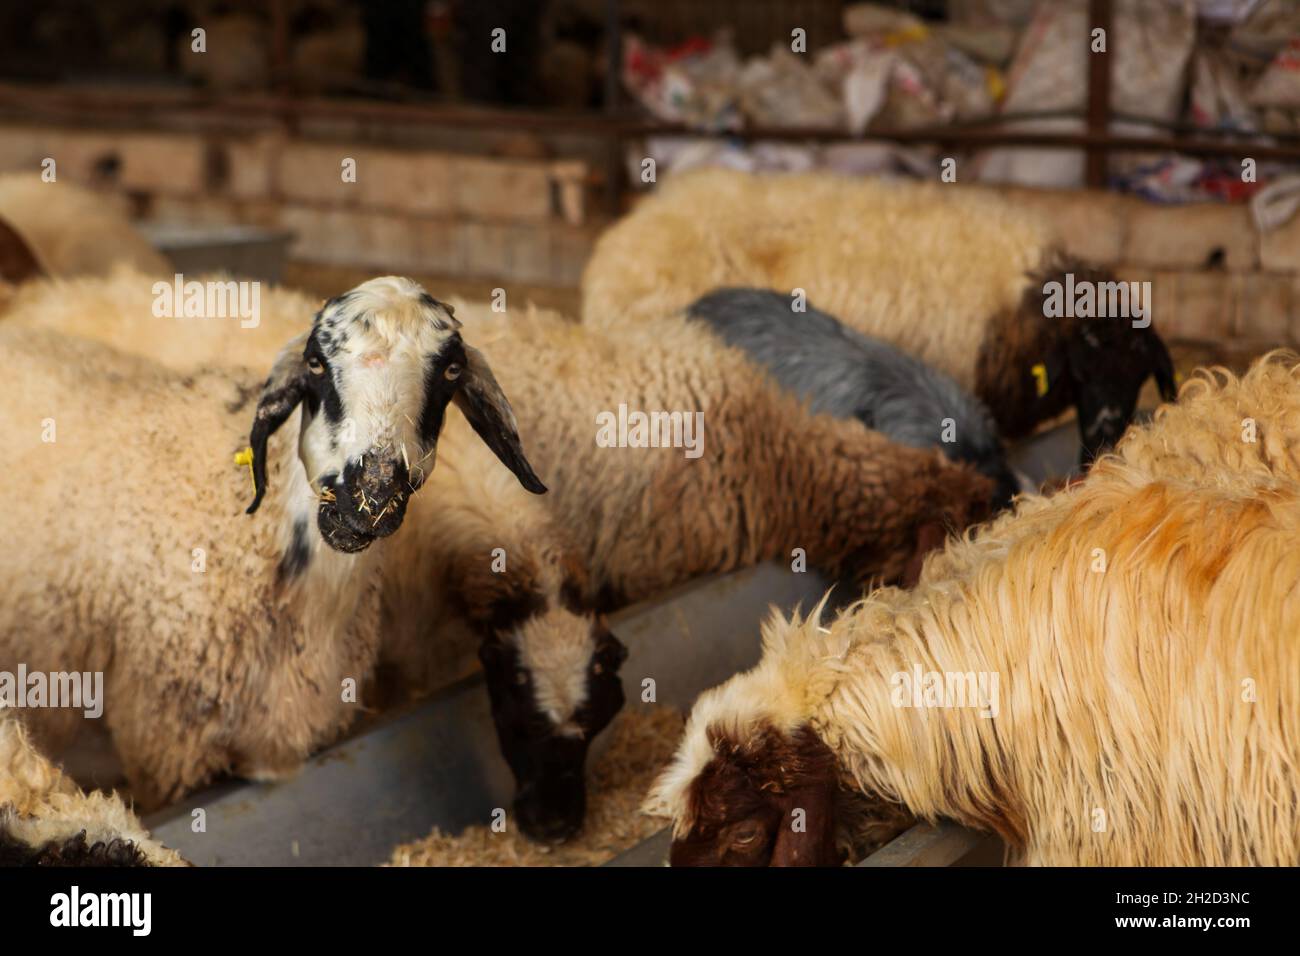 17 octobre 2021, Gaziantep, Anatolie, Turquie : Gaziantep,Turquie.19 octobre 2021.Moutons dans les fermes œGrand dans la ville de Gaziantep, dans le sud de la Turquie.La ferme reproduit des chèvres, des moutons et des poulets, et produit un grand nombre d'oeufs à aire libre.La ferme, qui cultive également des champignons et produit des fourrages pour animaux, s'engage à protéger l'environnement et à assurer la durabilité.L'entreprise est un exemple d'intégration réussie des Syriens qui s'installent en Turquie après avoir fui le conflit dans leur pays d'origine (Credit image: © Zakariya Yahya/IMAGESLIVE via ZUMA Press Wire) Banque D'Images